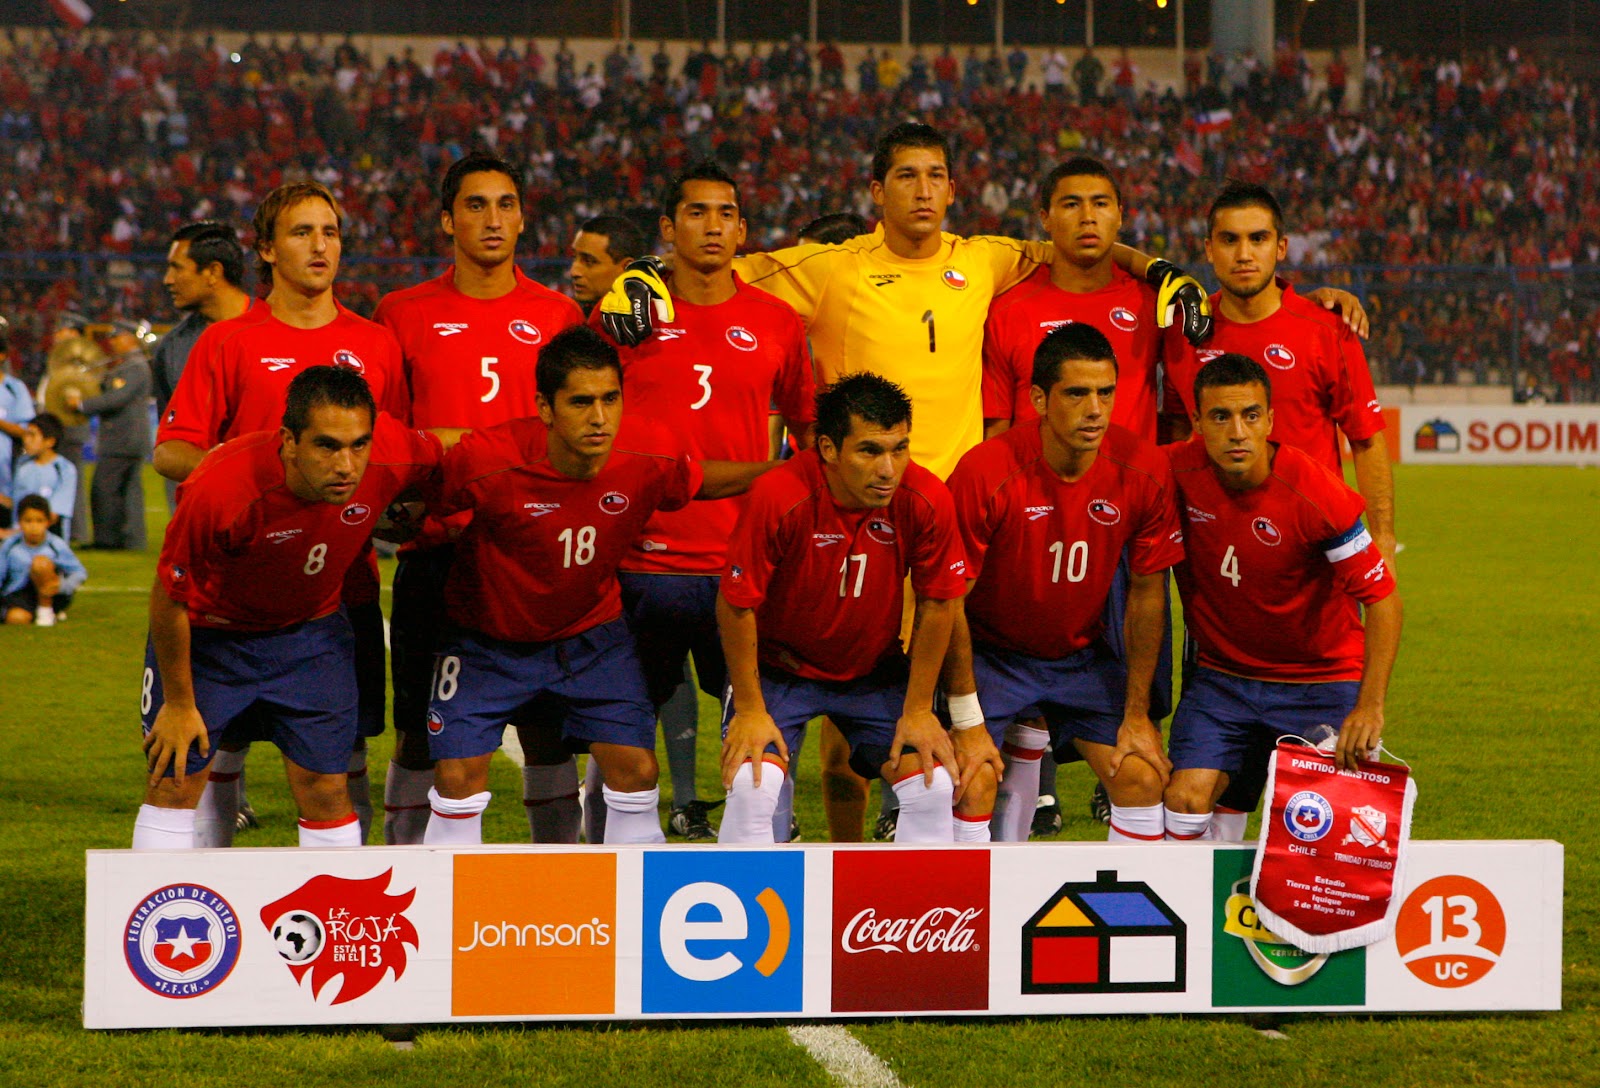 Formación de Chile ante Trinidad y Tobago, amistoso disputado el 5 de mayo de 2010